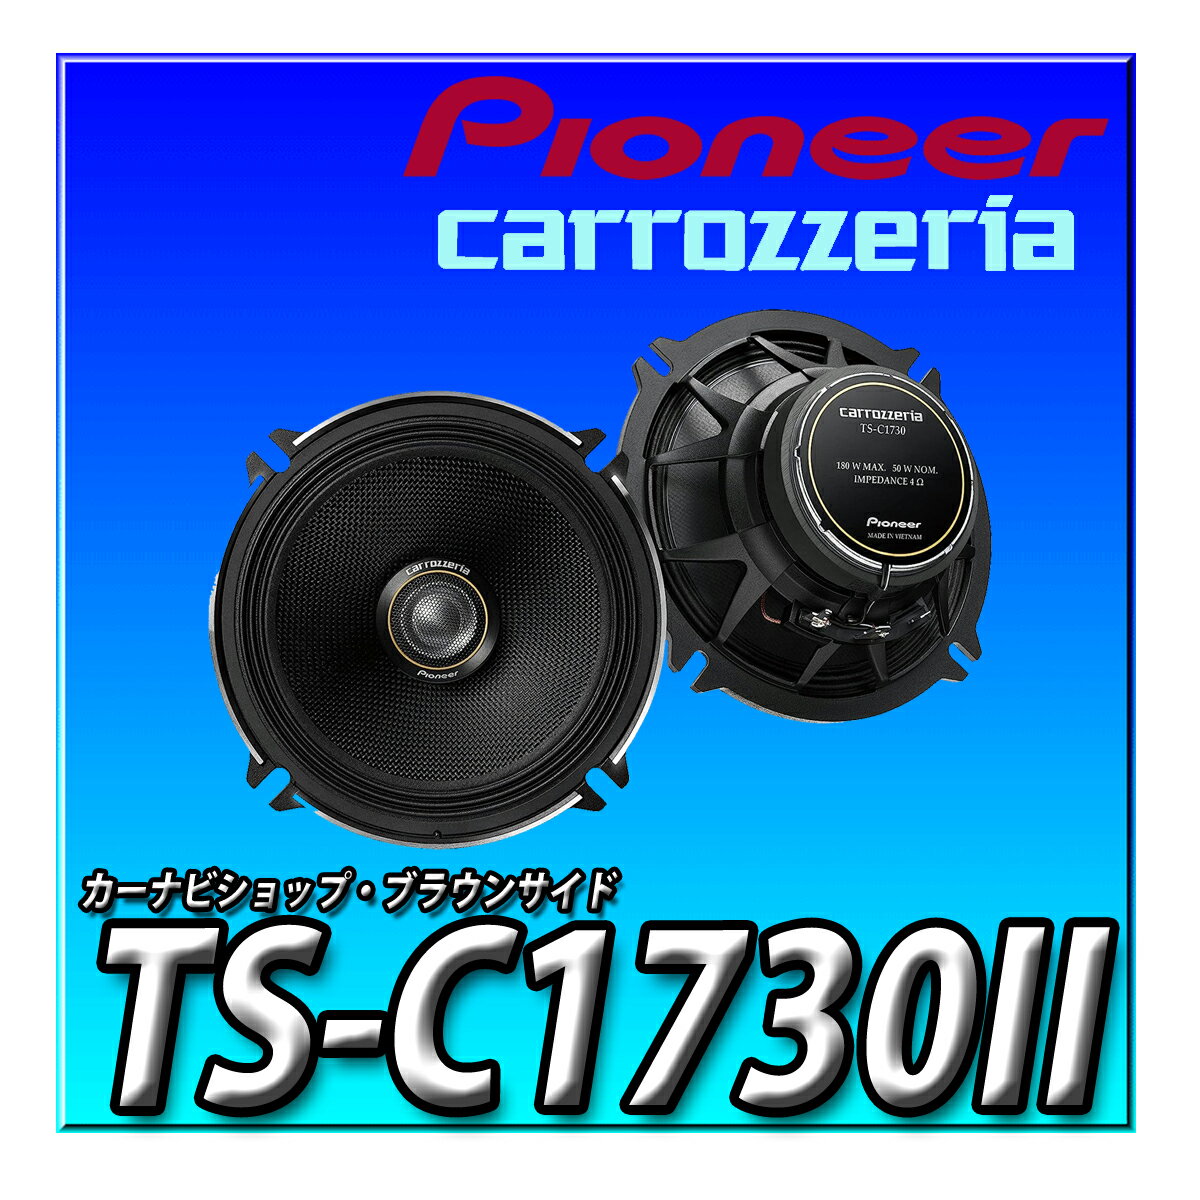 TS-C1730II Pioneer パイオニア スピーカー 17cm カスタムフィットスピーカー コアキシャル2ウェイ ハイレゾ対応 カロッツェリア